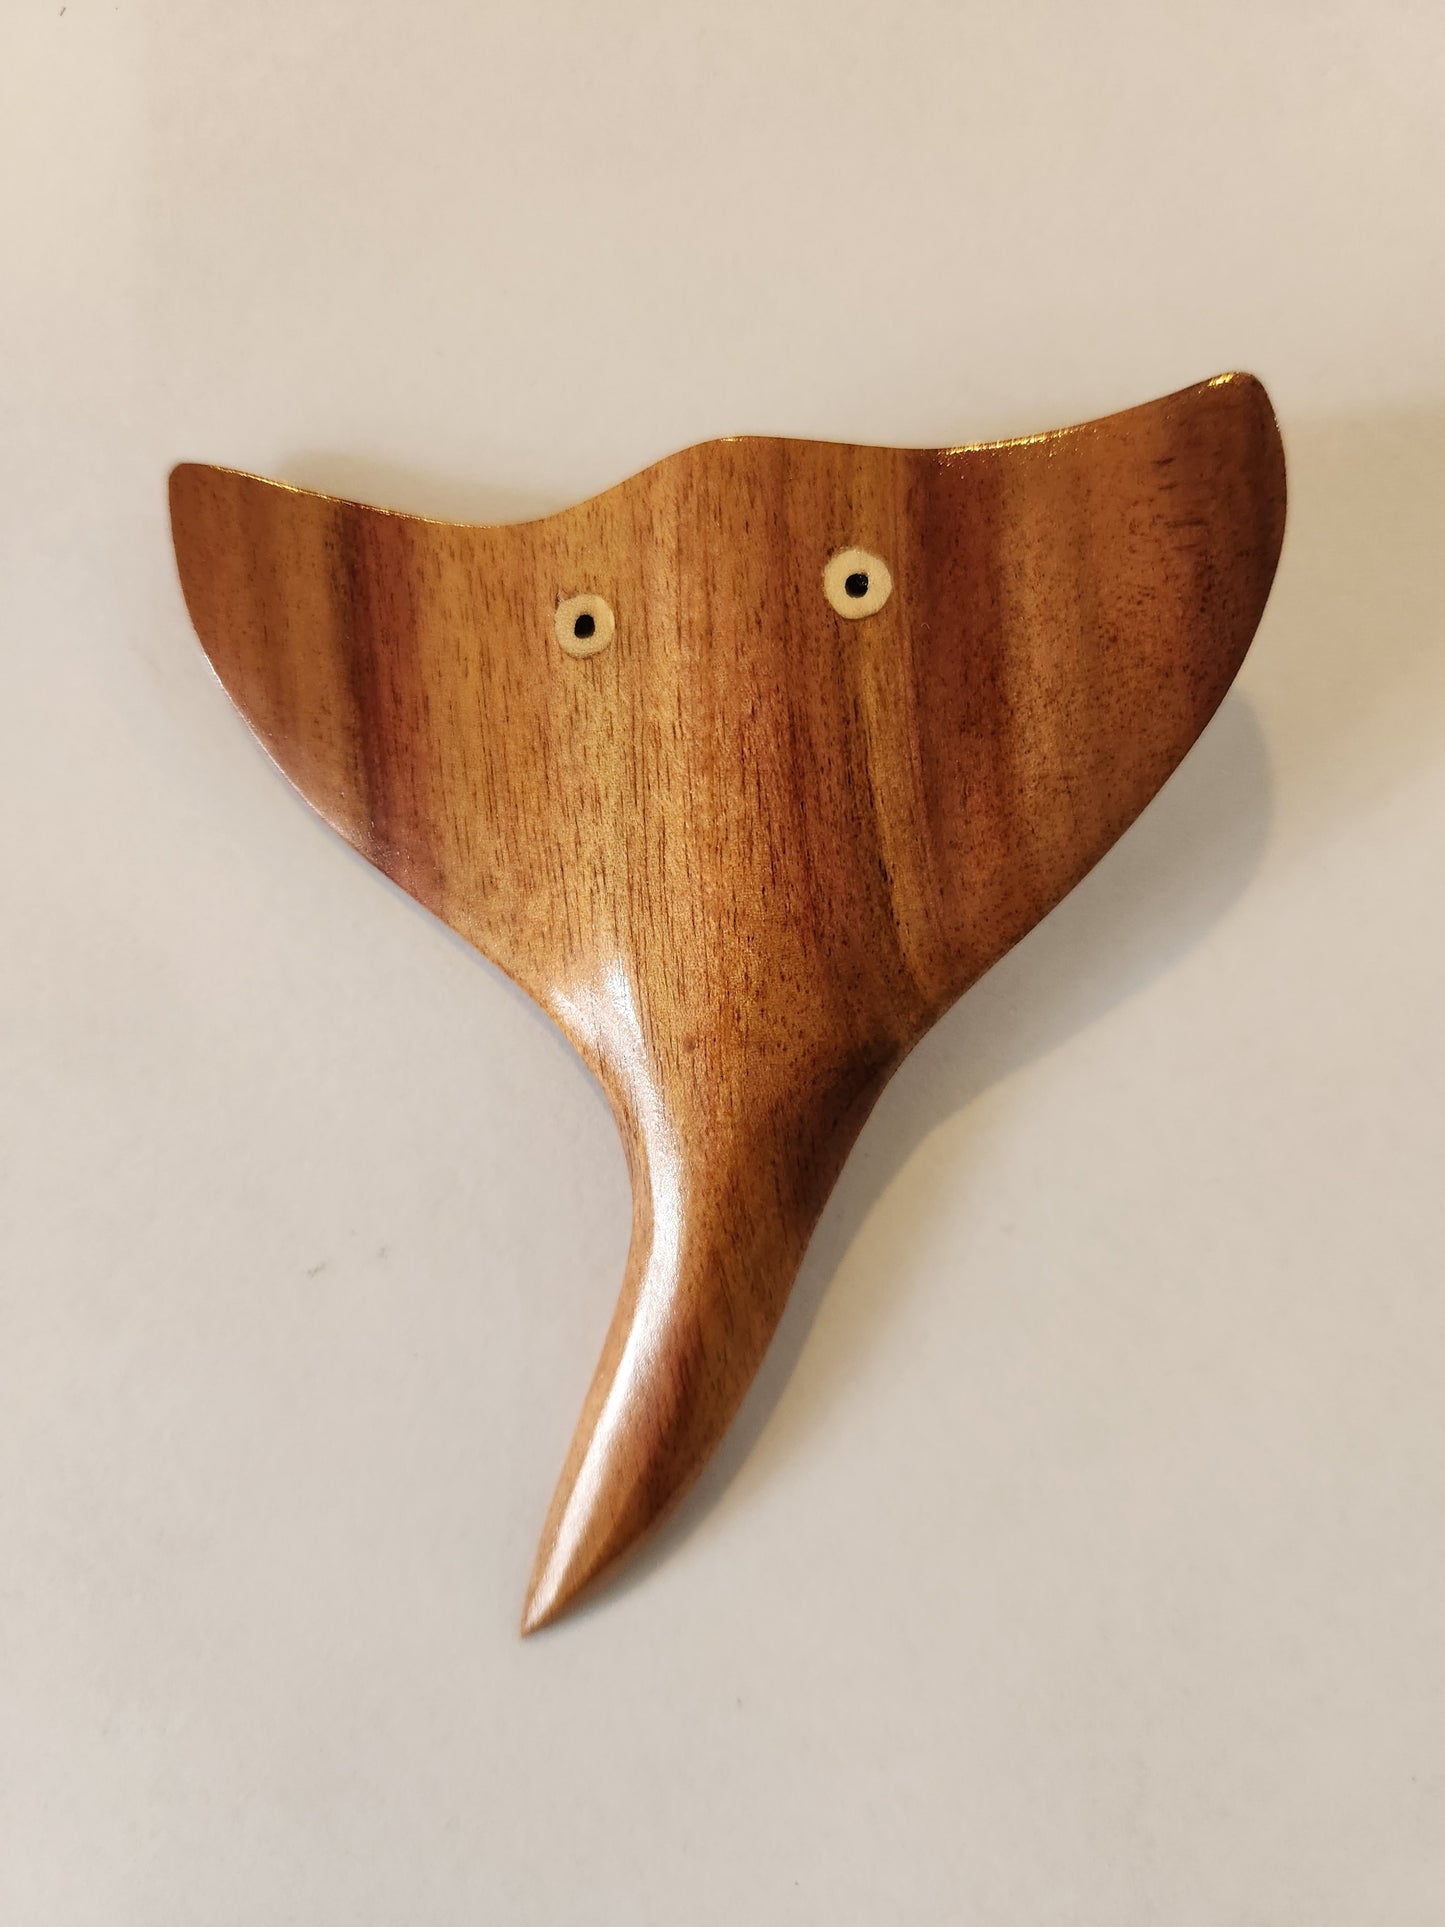 Little Stingray tallada a mano en madera local de Miro